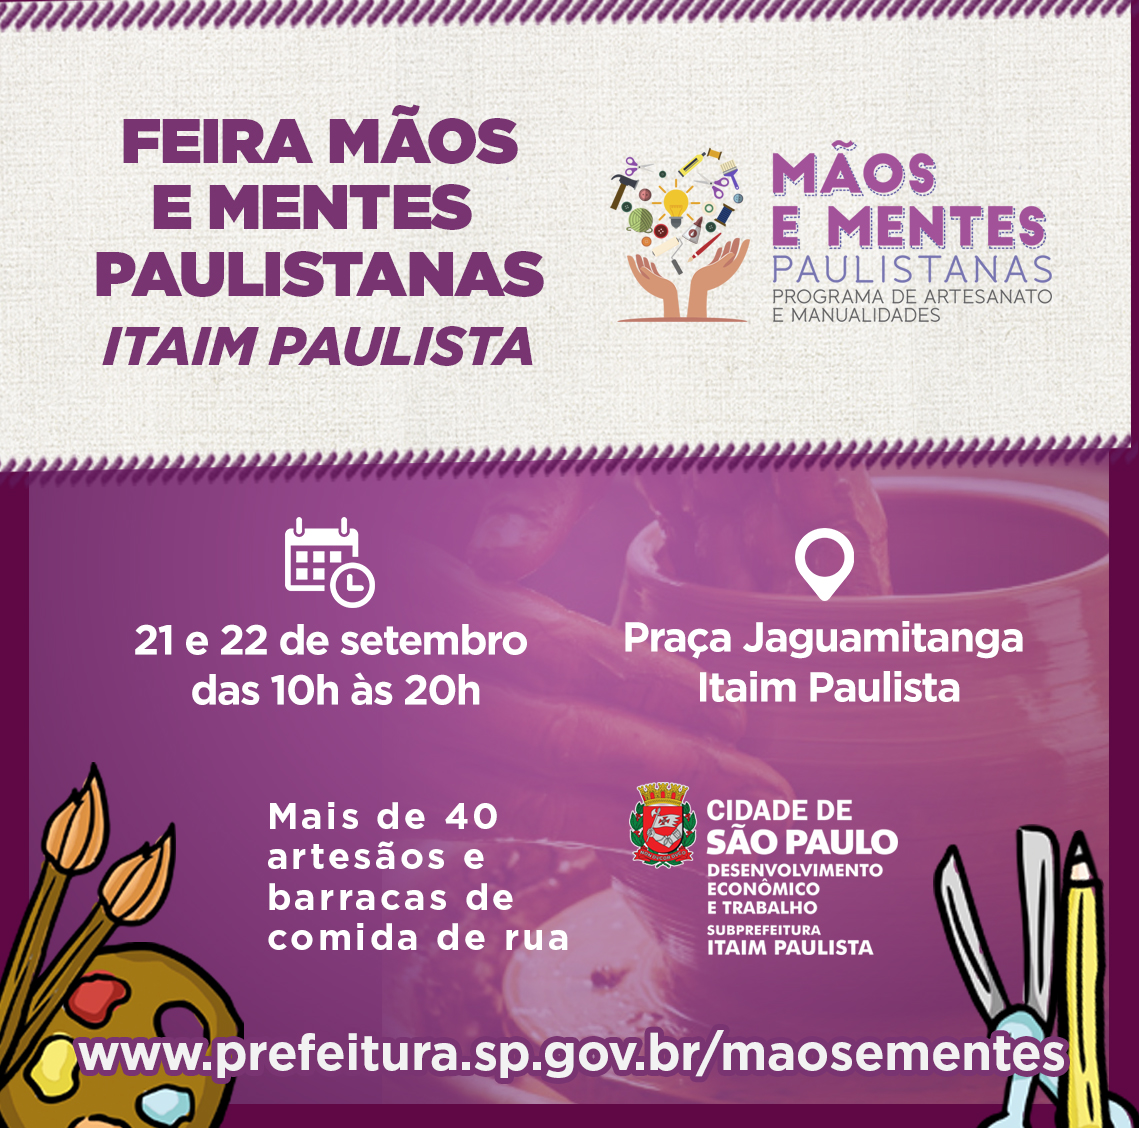 sob fundo lilás o texto de cor roxa " Feira mãos e  mentes paulistanas - Itaim Paulista" 